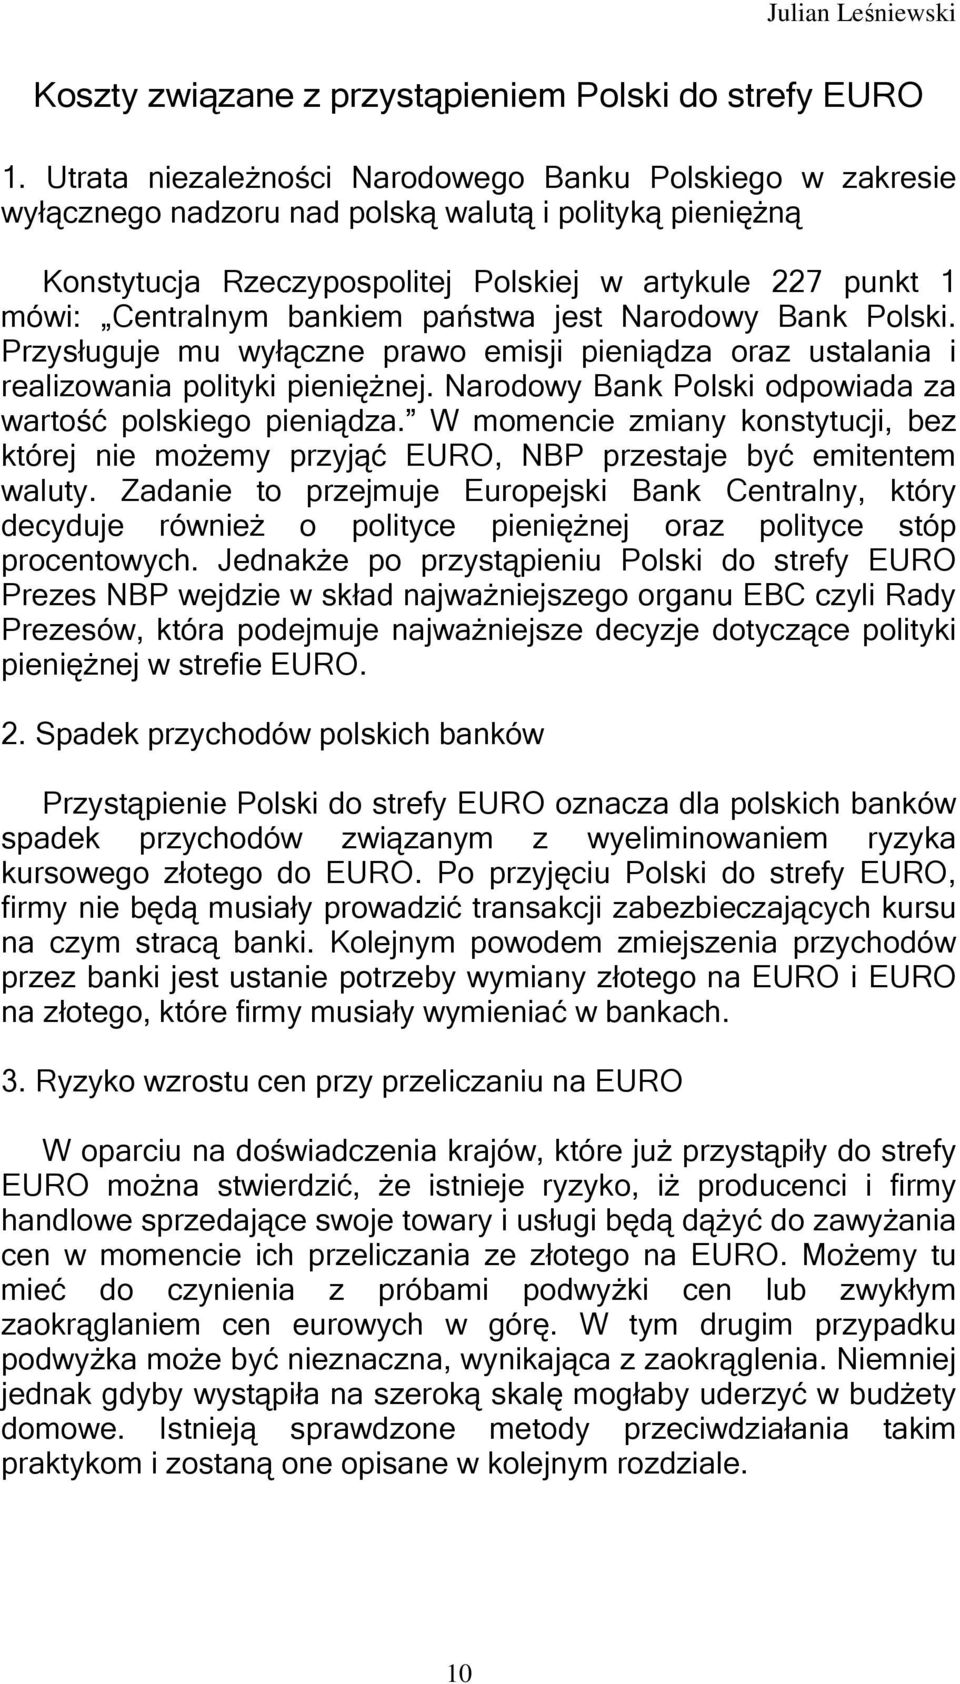 bankiem państwa jest Narodowy Bank Polski. Przysługuje mu wyłączne prawo emisji pieniądza oraz ustalania i realizowania polityki pieniężnej.